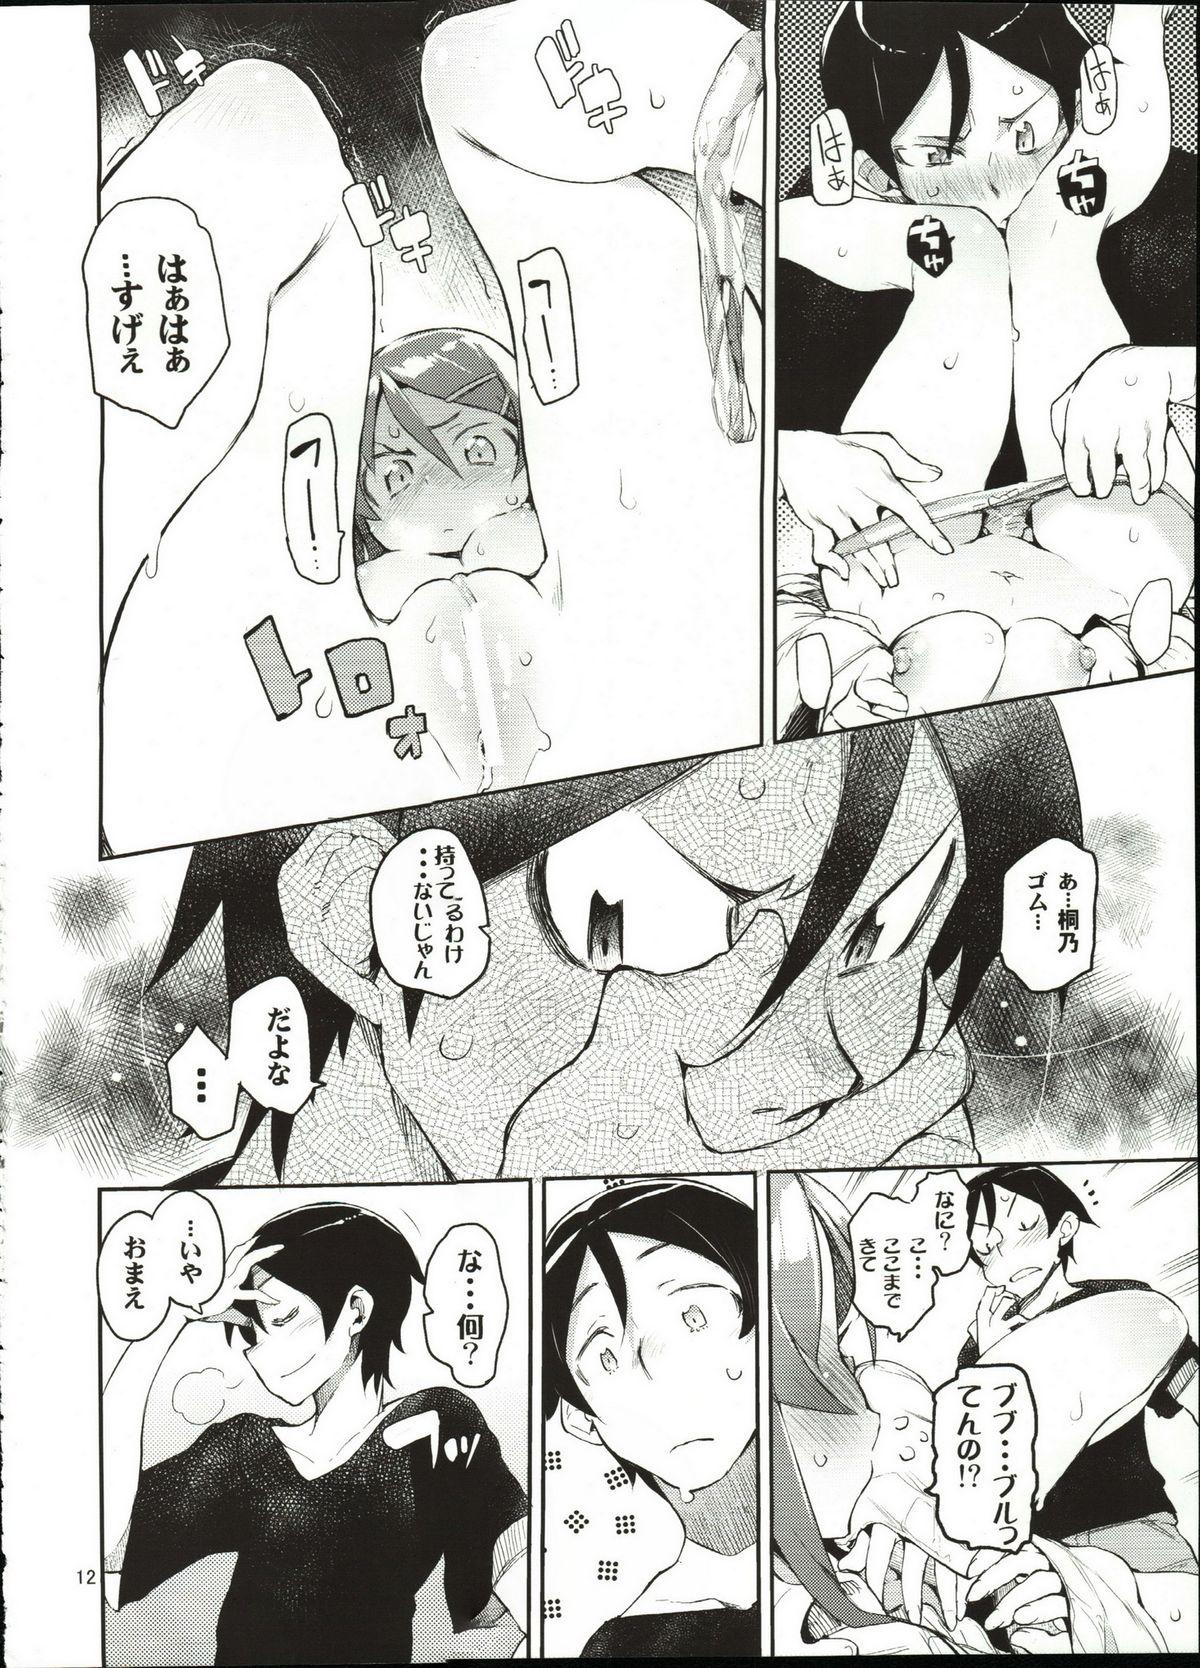 1080p Zettai Kirino Ryouiki - Ore no imouto ga konna ni kawaii wake ga nai Sextoy - Page 11